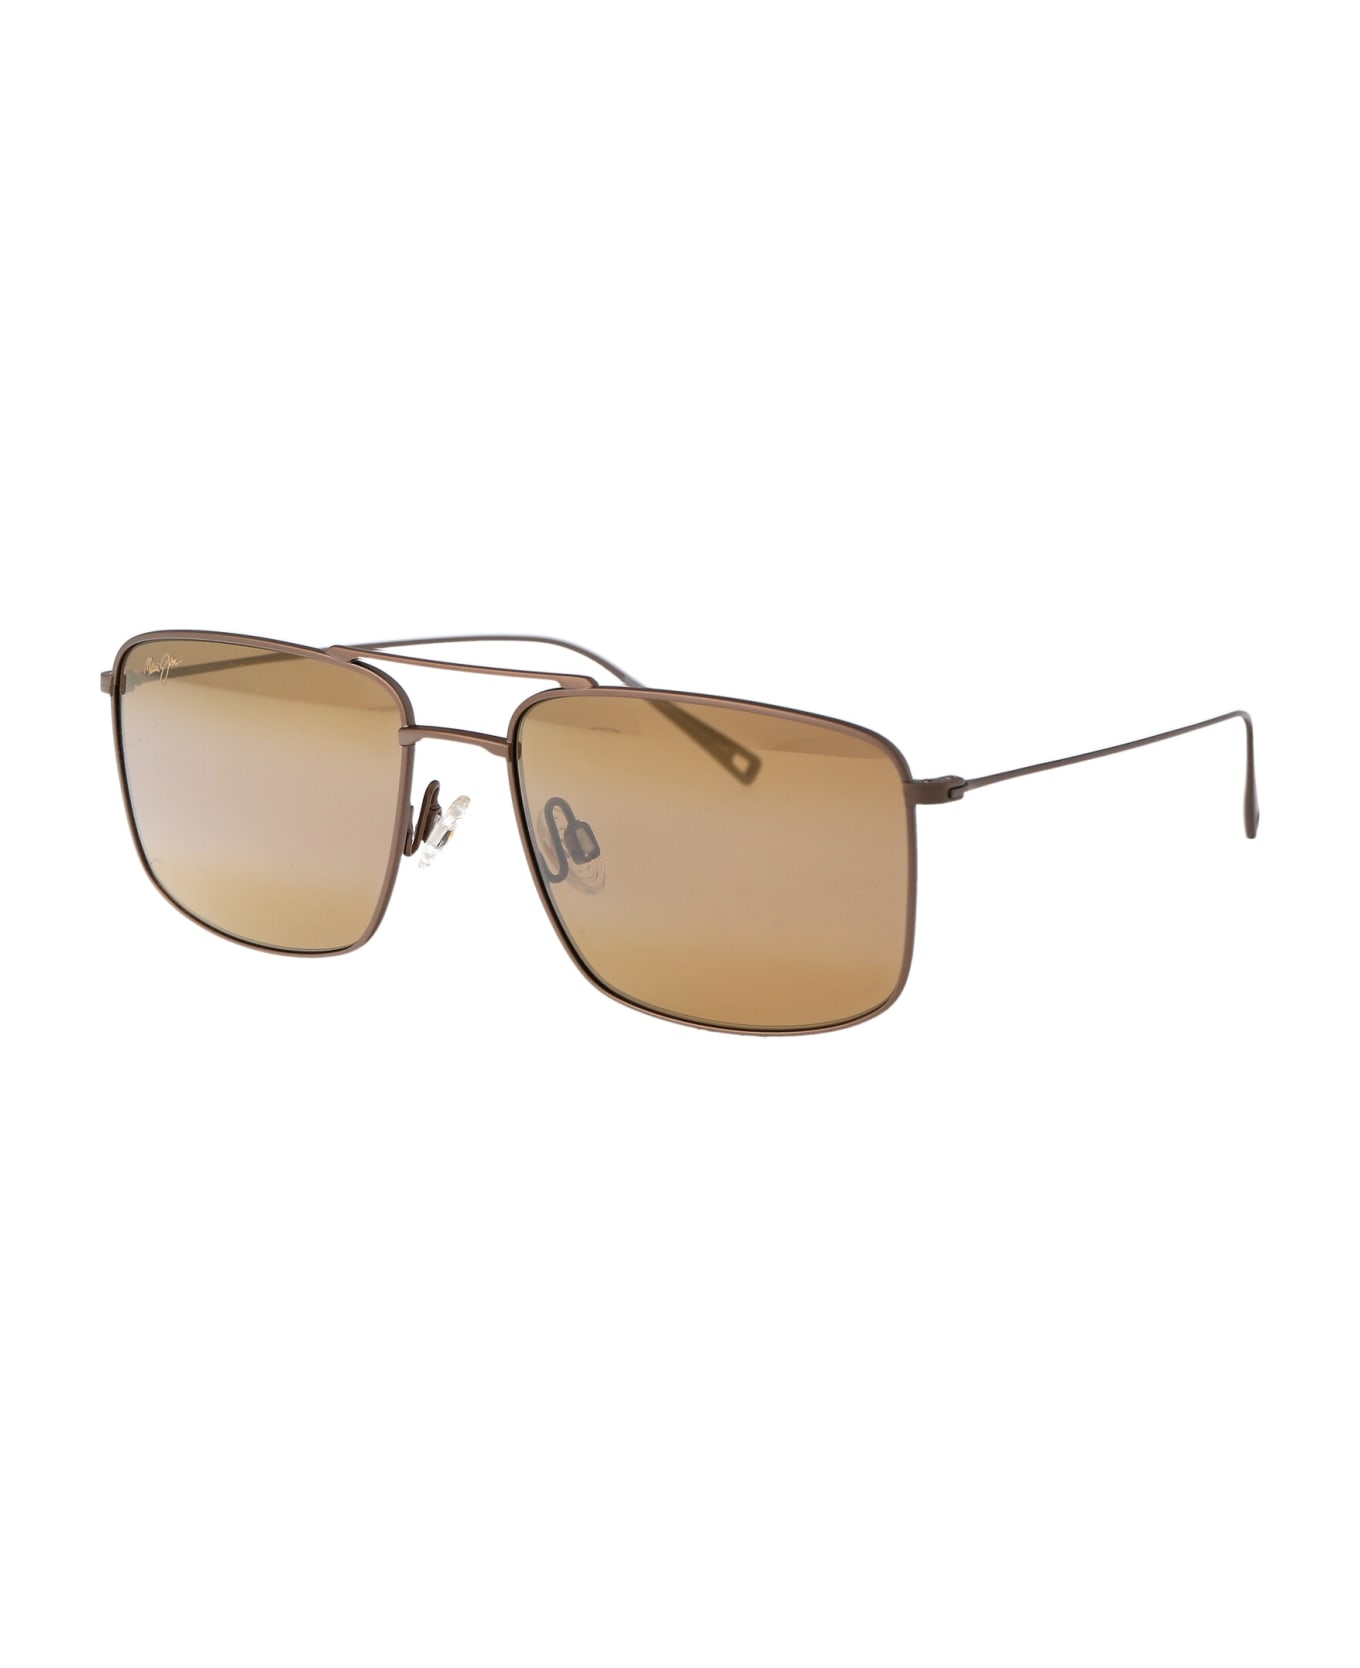 Maui Jim Aeko Sunglasses - 01 HCL AEKO SATIN SEPA サングラス